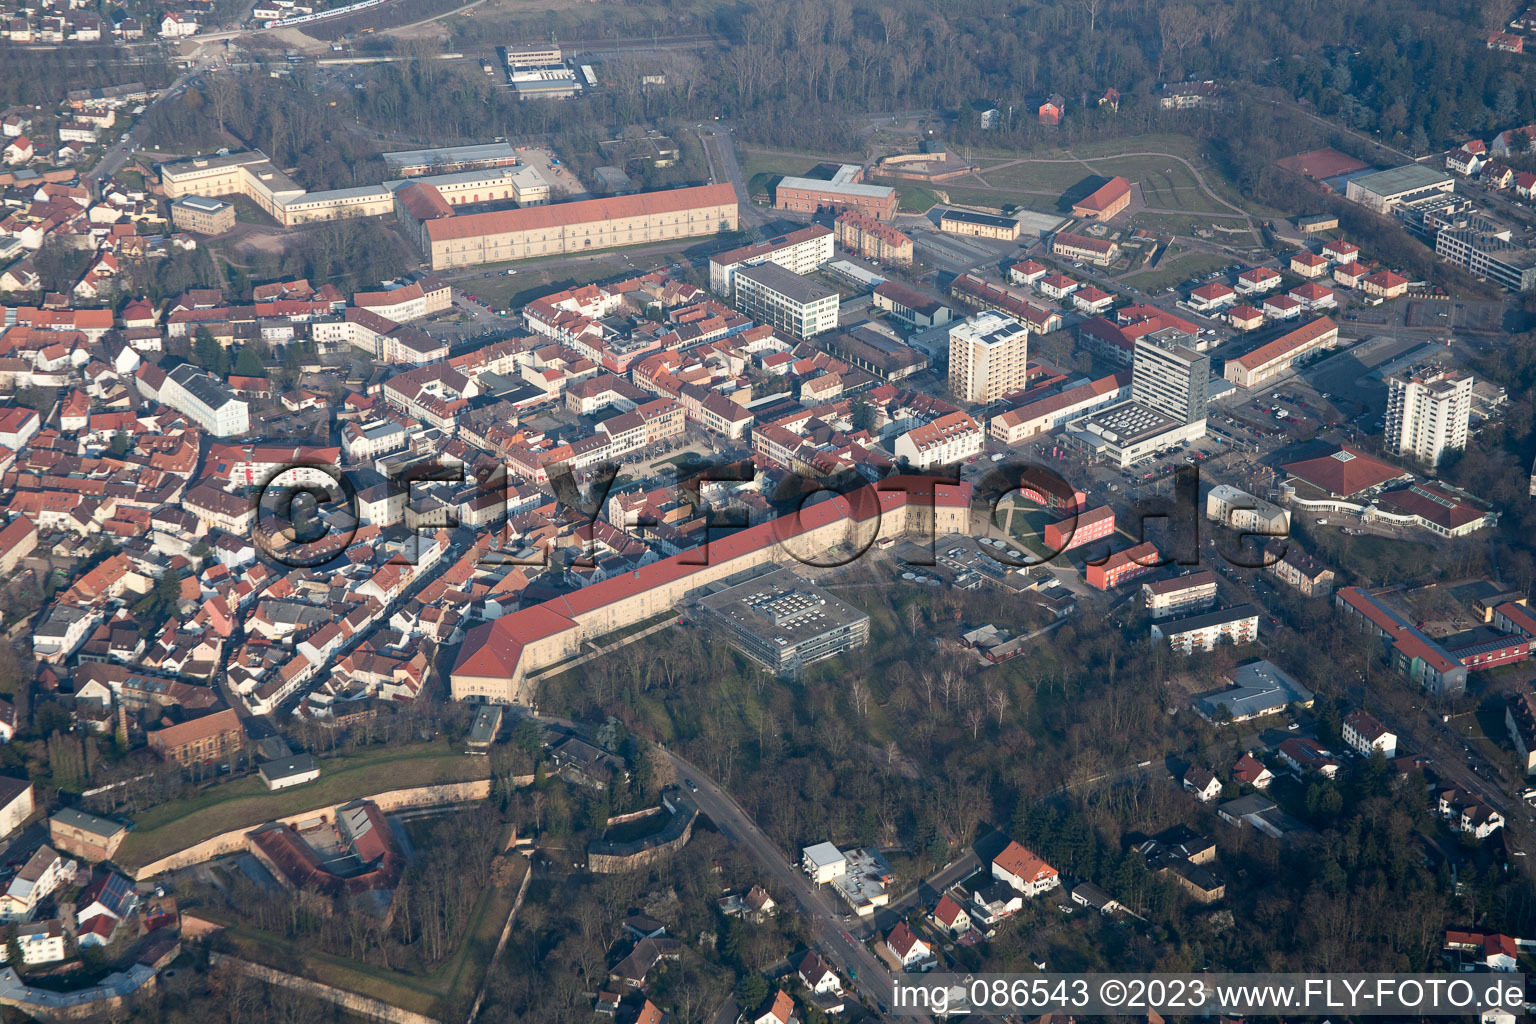 Germersheim dans le département Rhénanie-Palatinat, Allemagne vue d'en haut